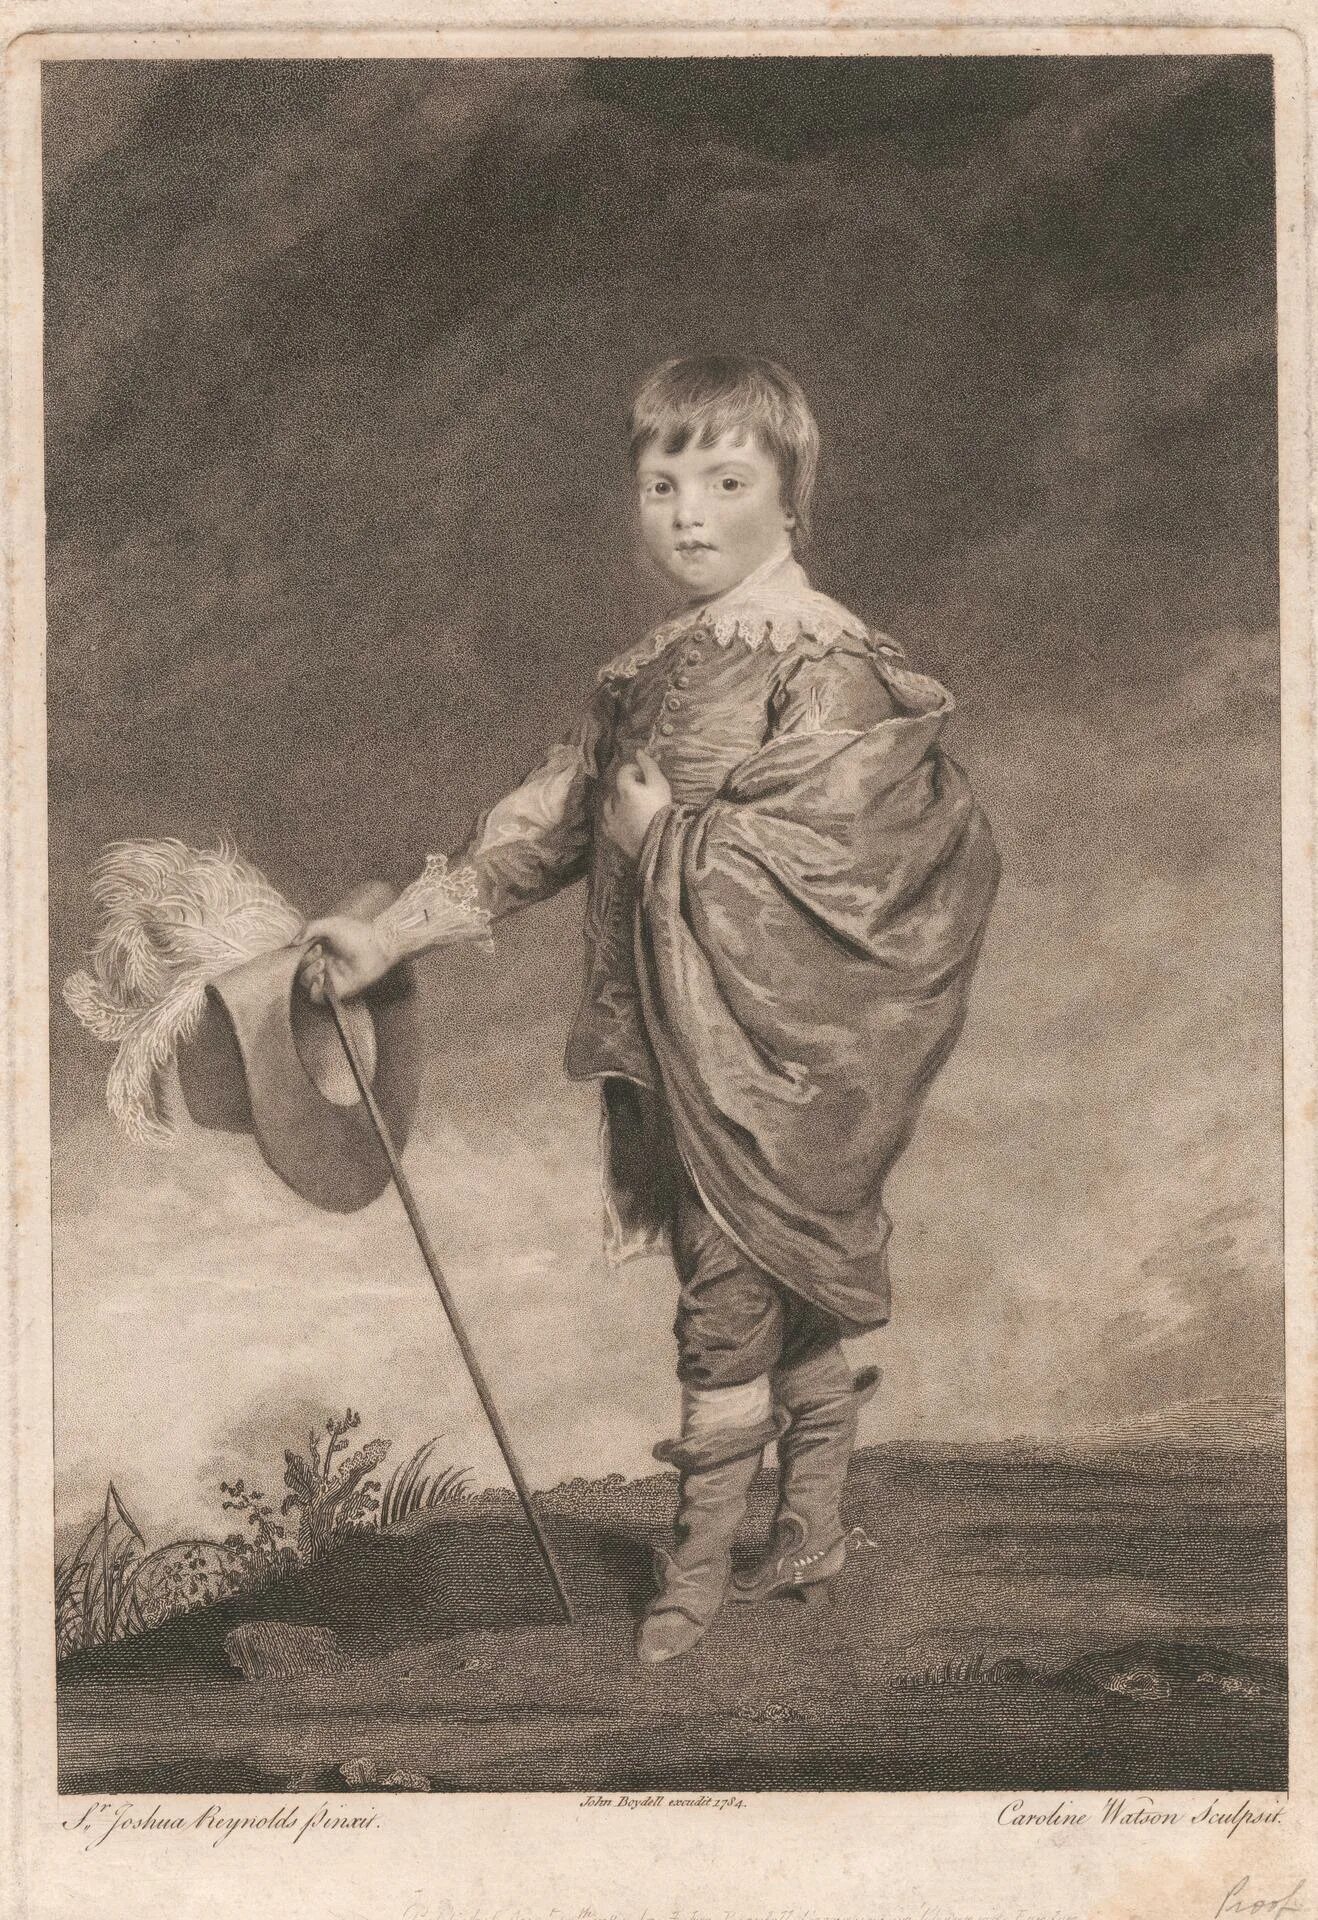 Мальчики 18 века. Джошуа Рейнольдс. Джошуа Рейнольдс (1723-1792). Джошуа Рейнольдс мальчик. Джошуа Рейнольдс 1780.